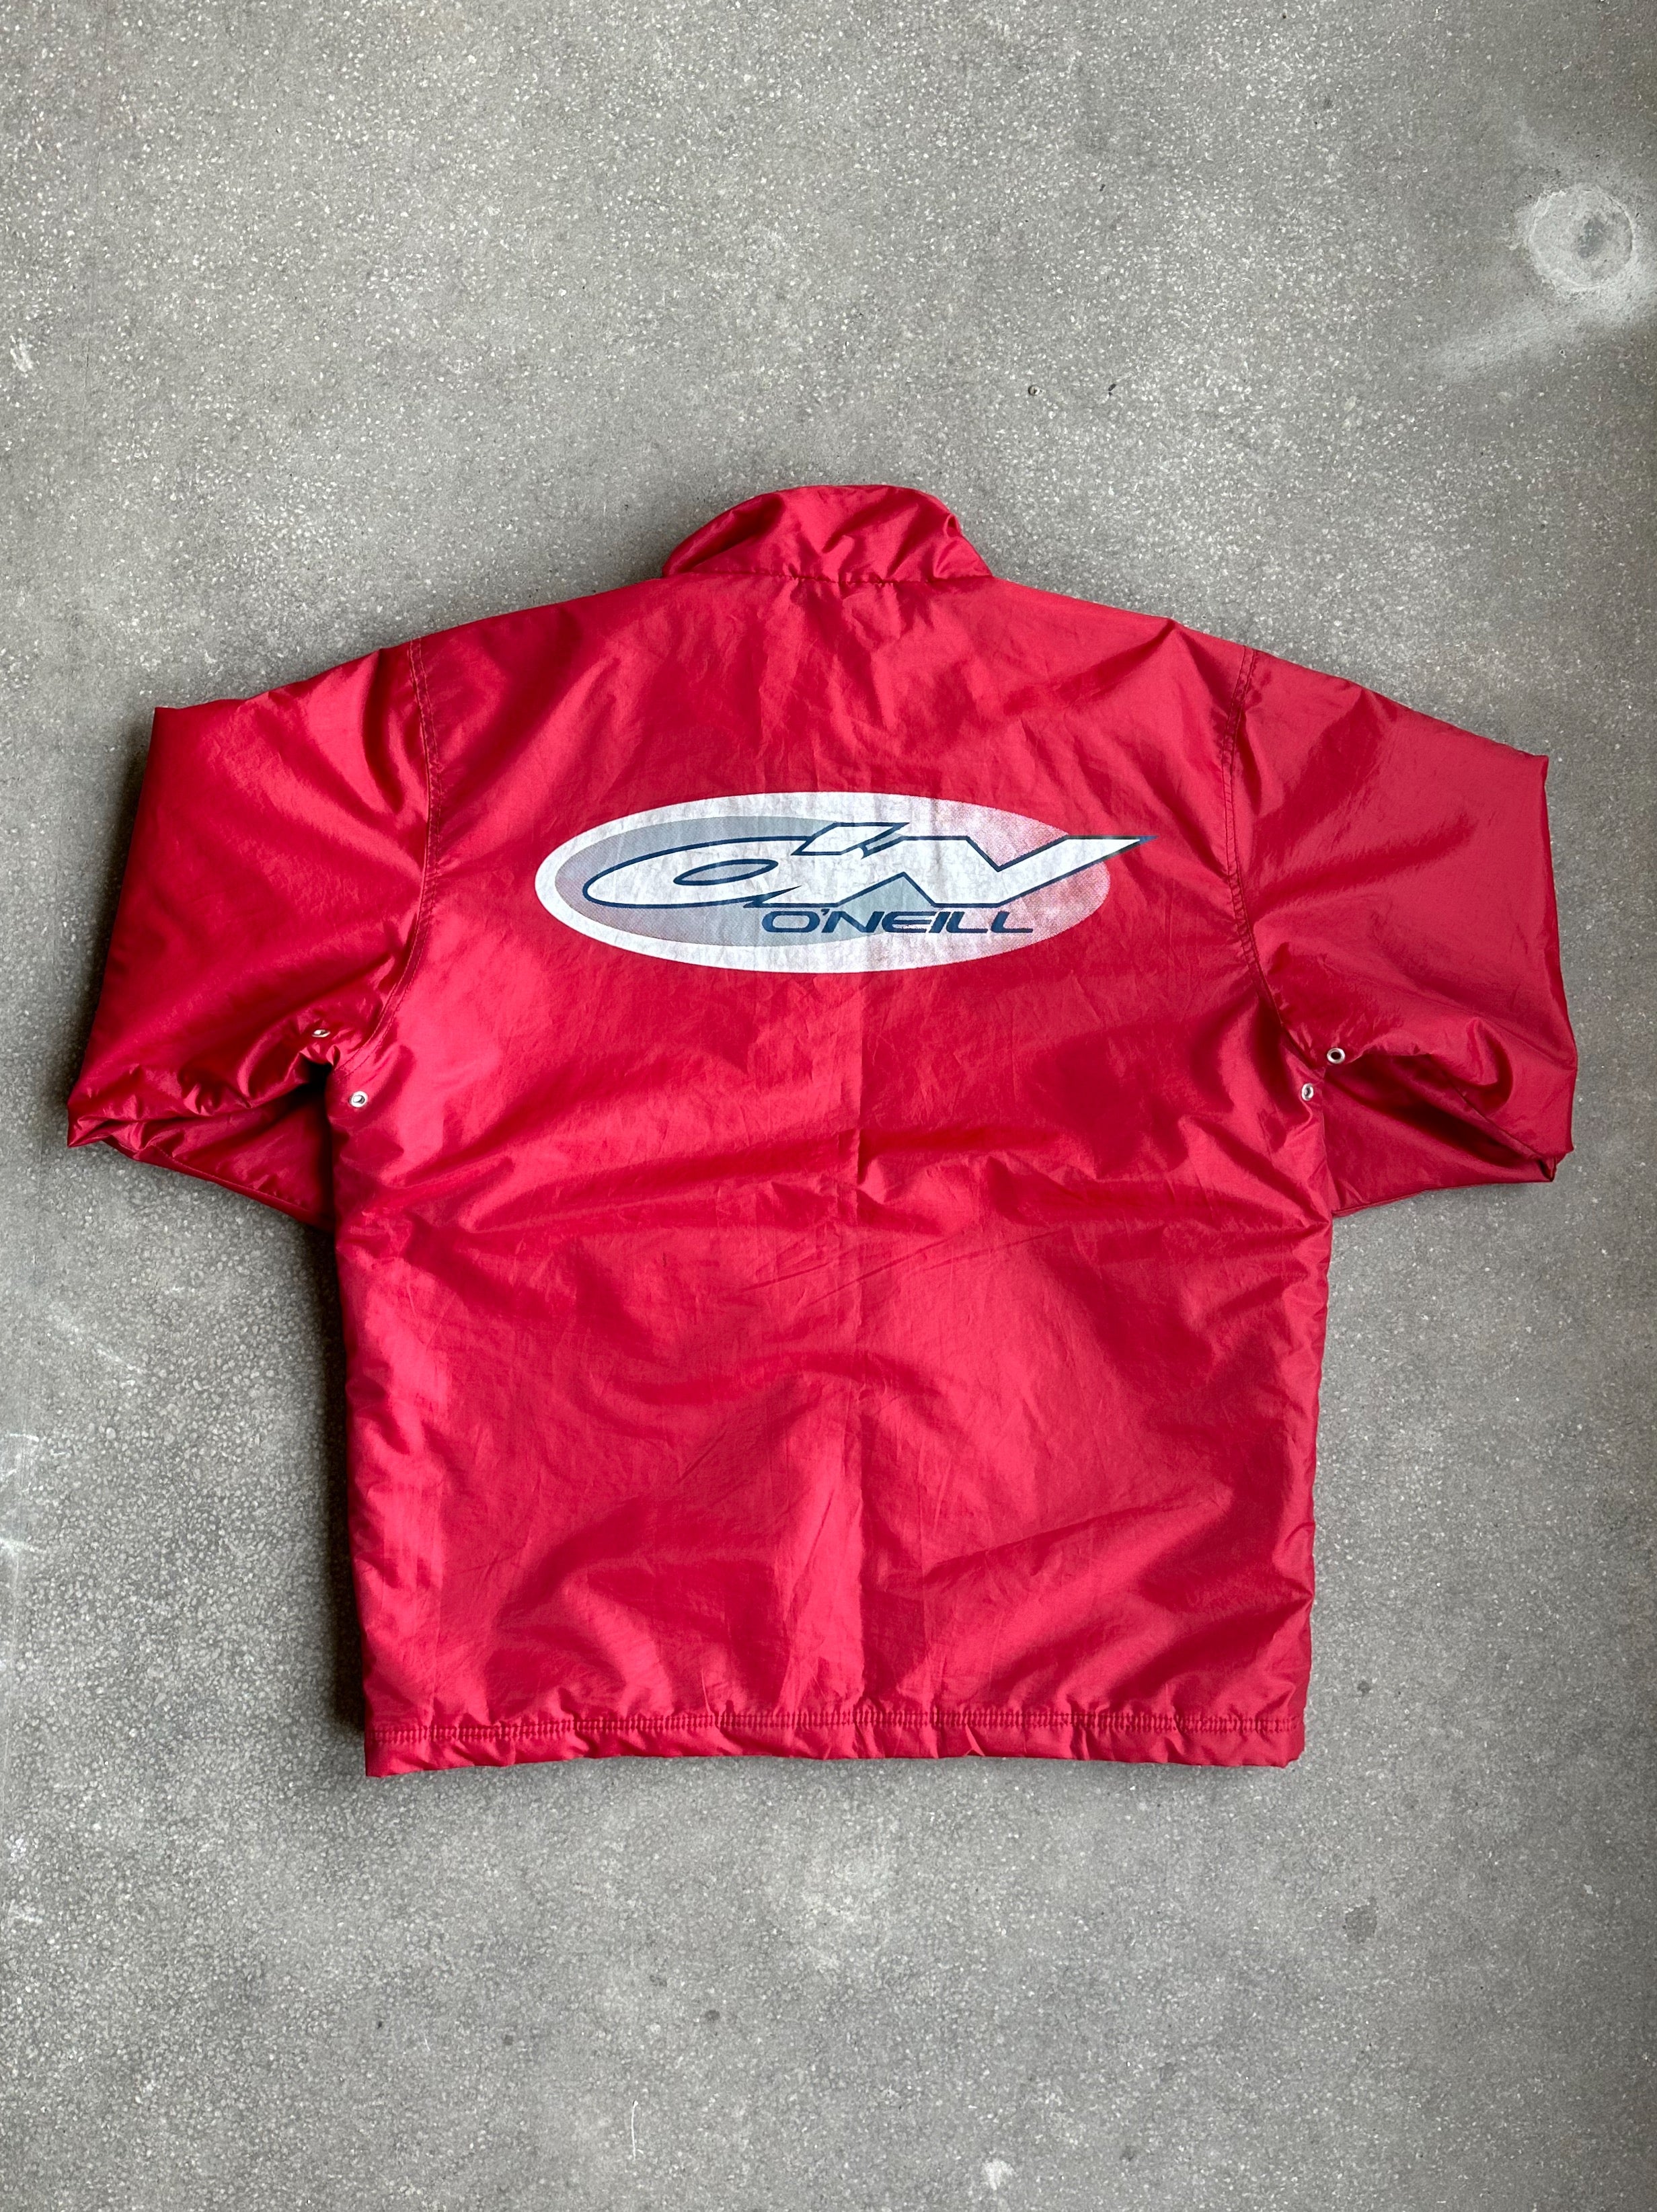 Vintage O'Neill Jacket - Extra Large